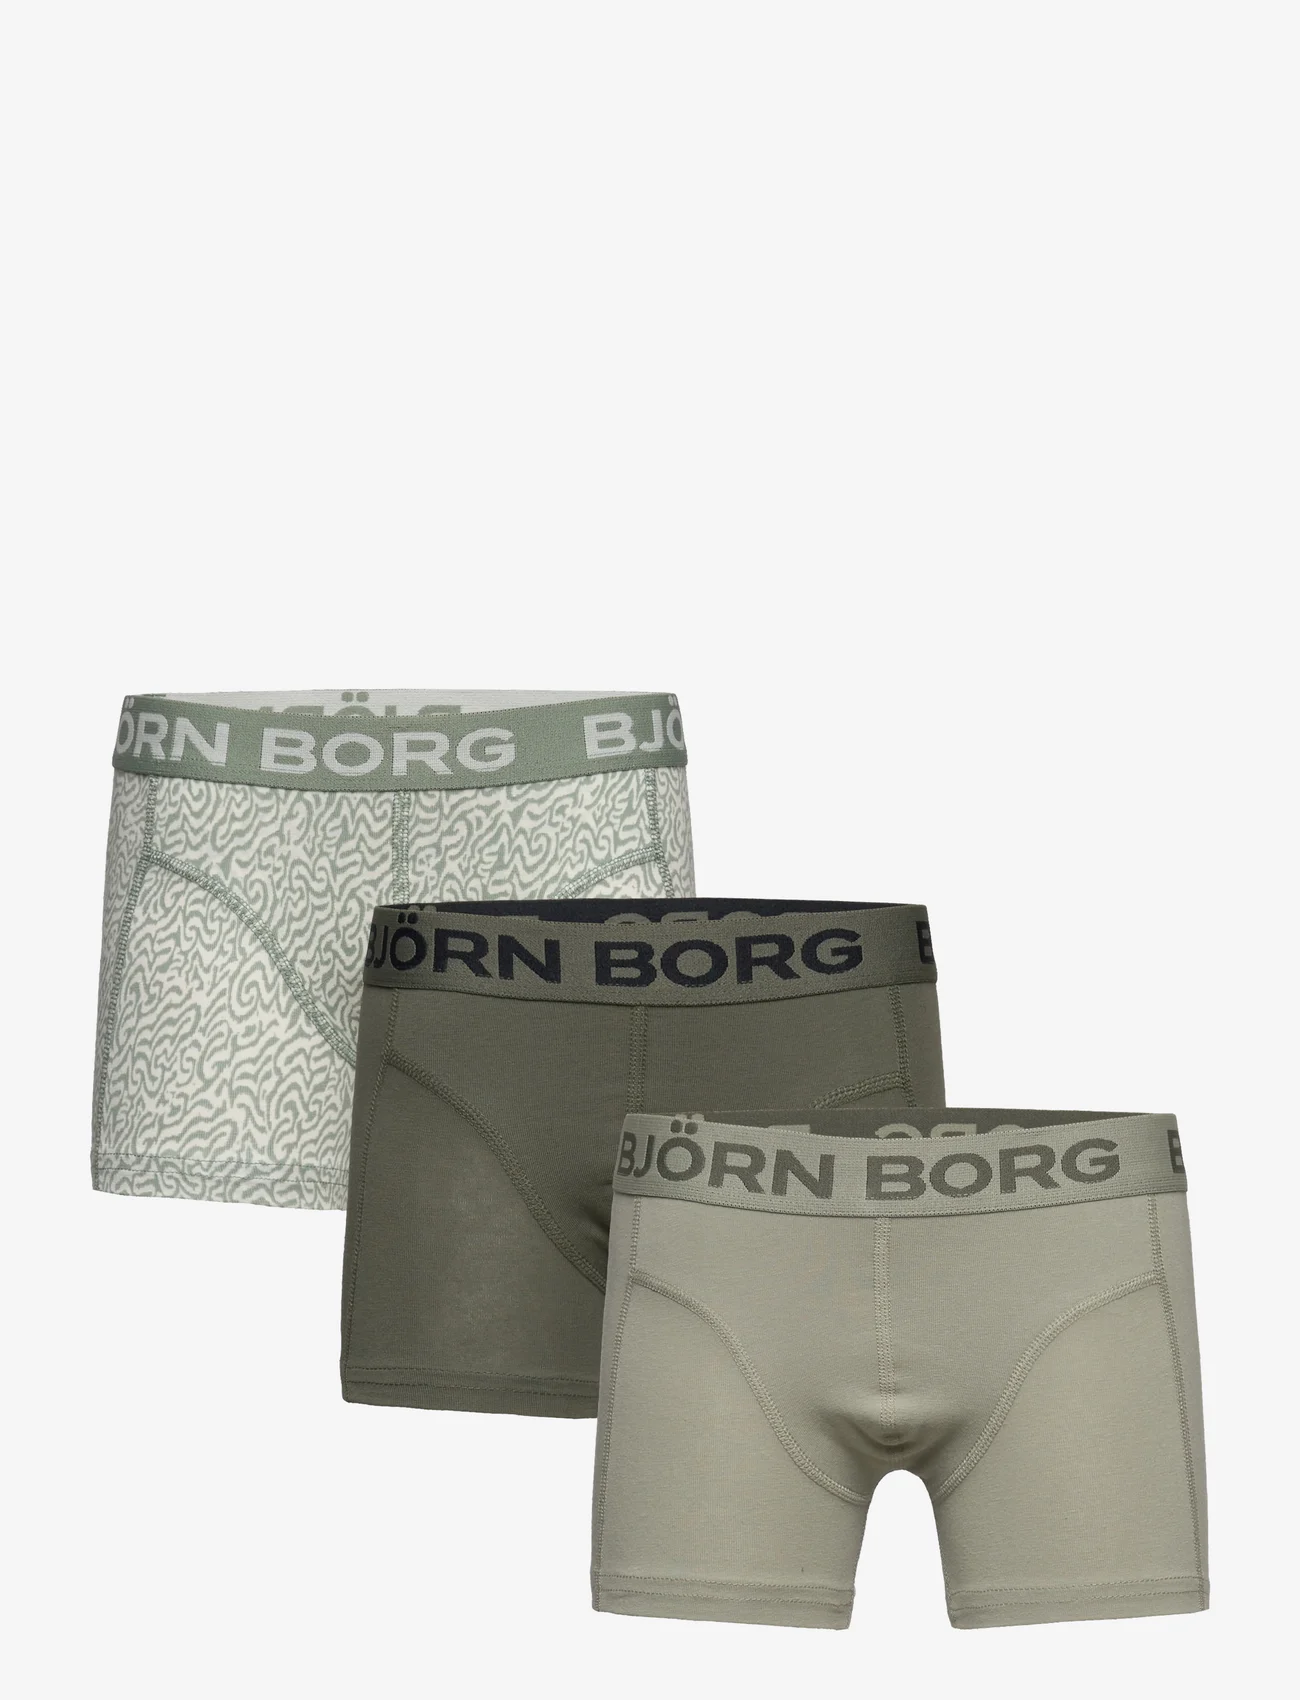 Björn Borg - CORE BOXER 3p - bokserit - multipack 4 - 0